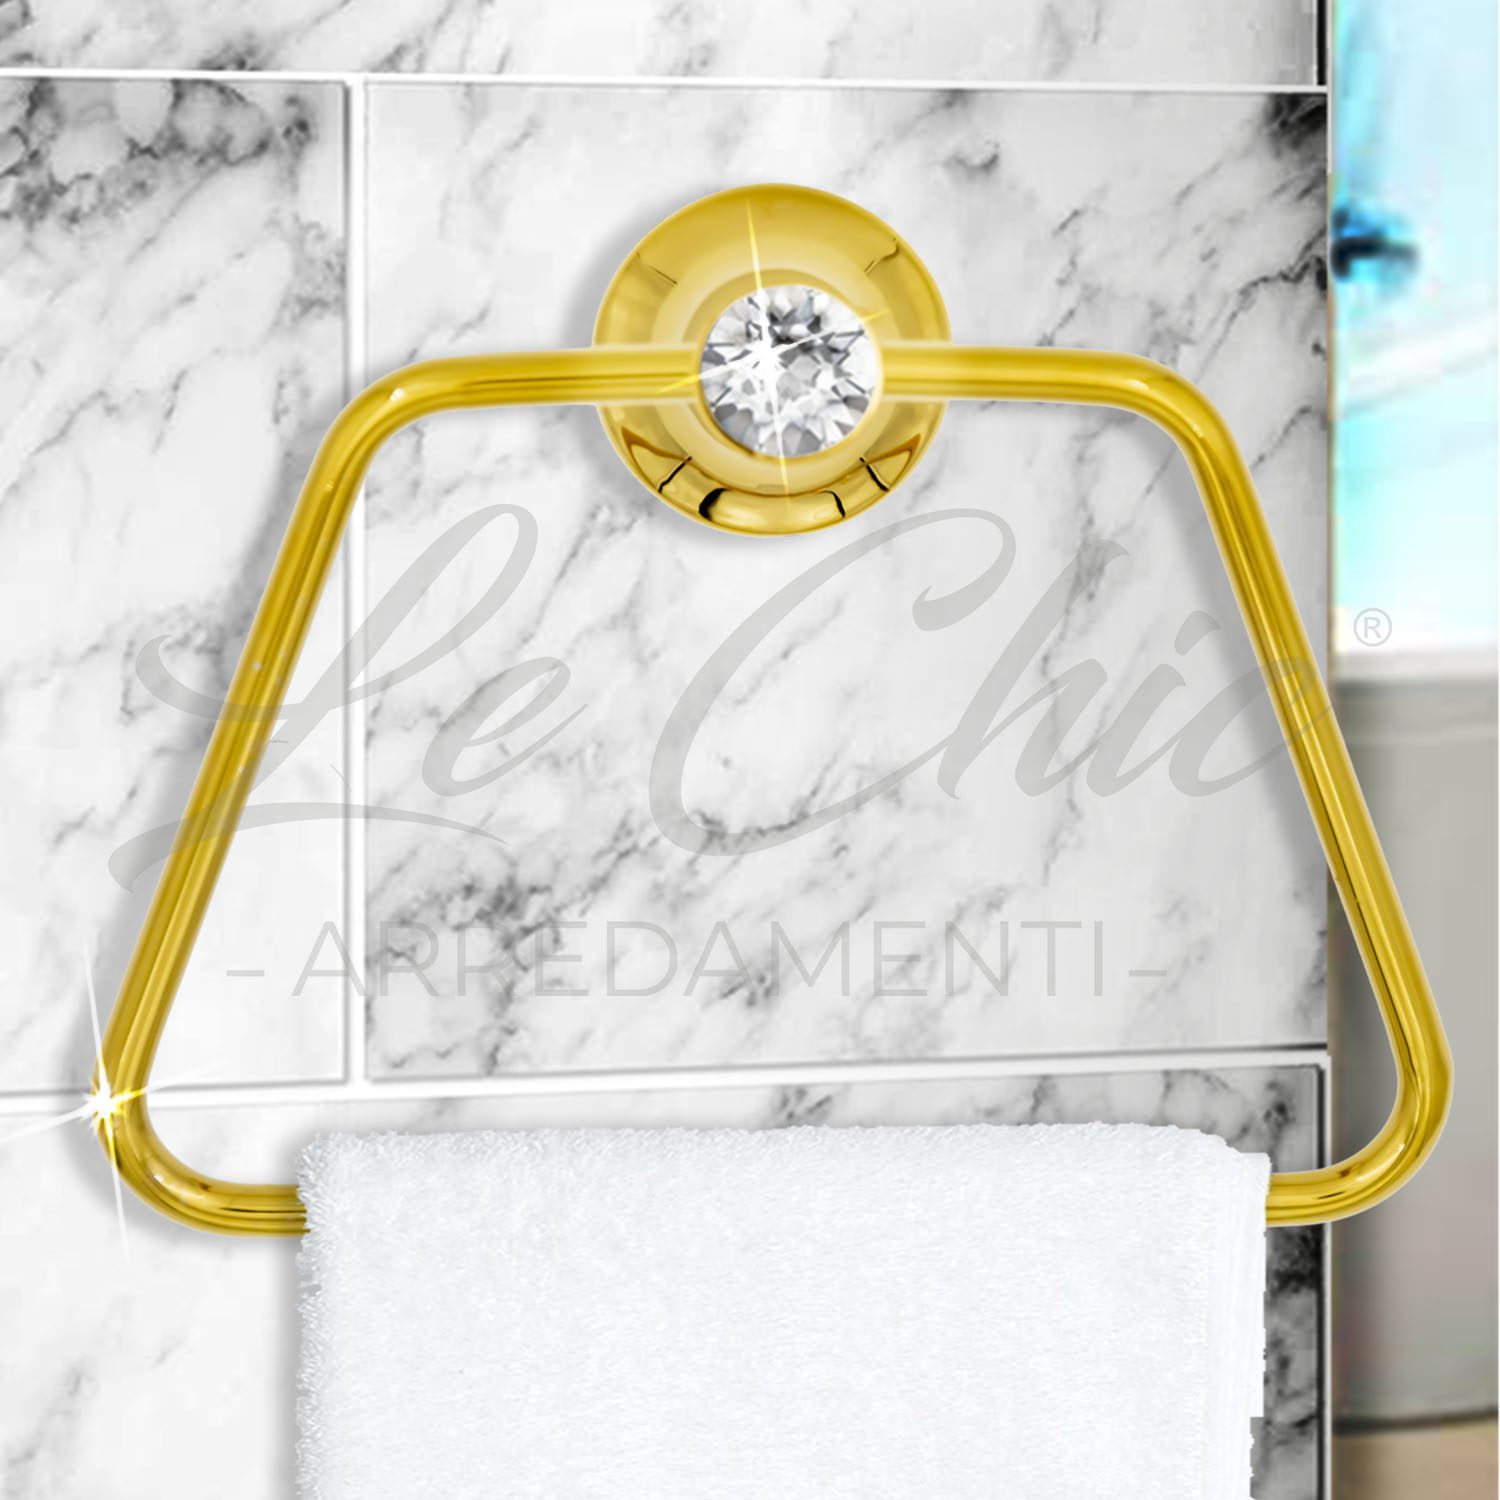 Asta porta asciugamani bagno oro con appendini - Le Chic Arredamenti